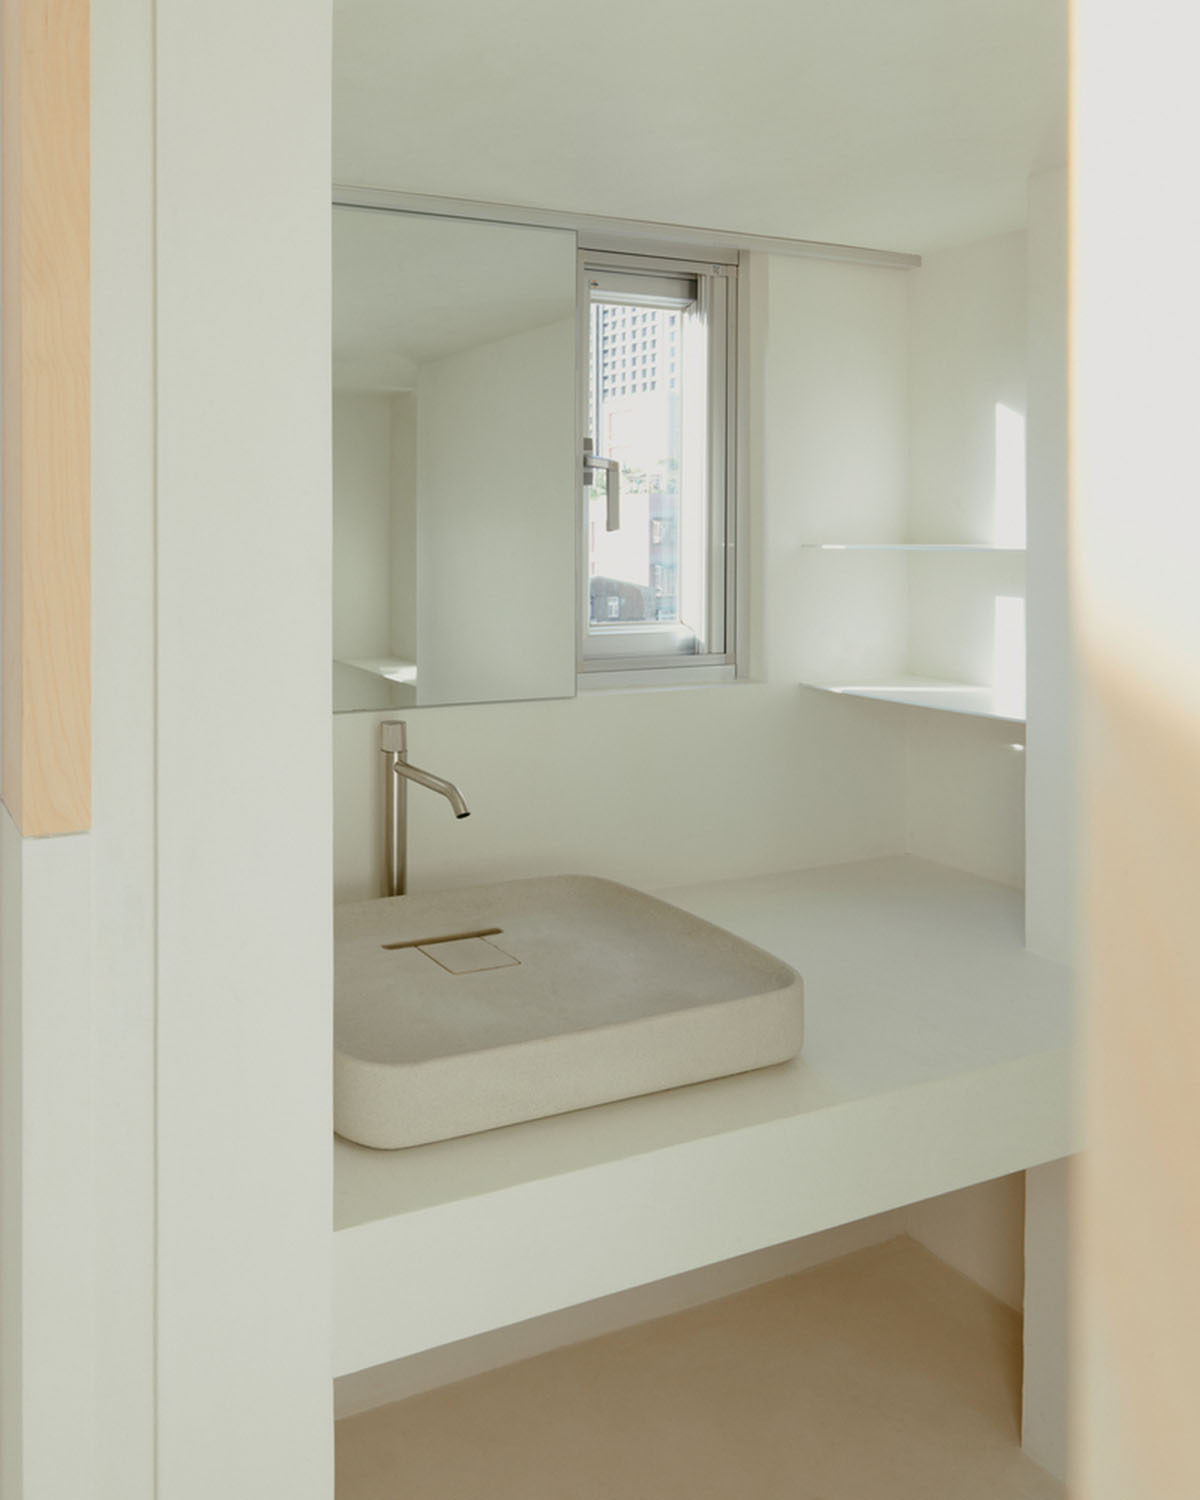 Дизайн 2BOOKS обновил маленькую квартиру в Тайбэе светлыми интерьерами 